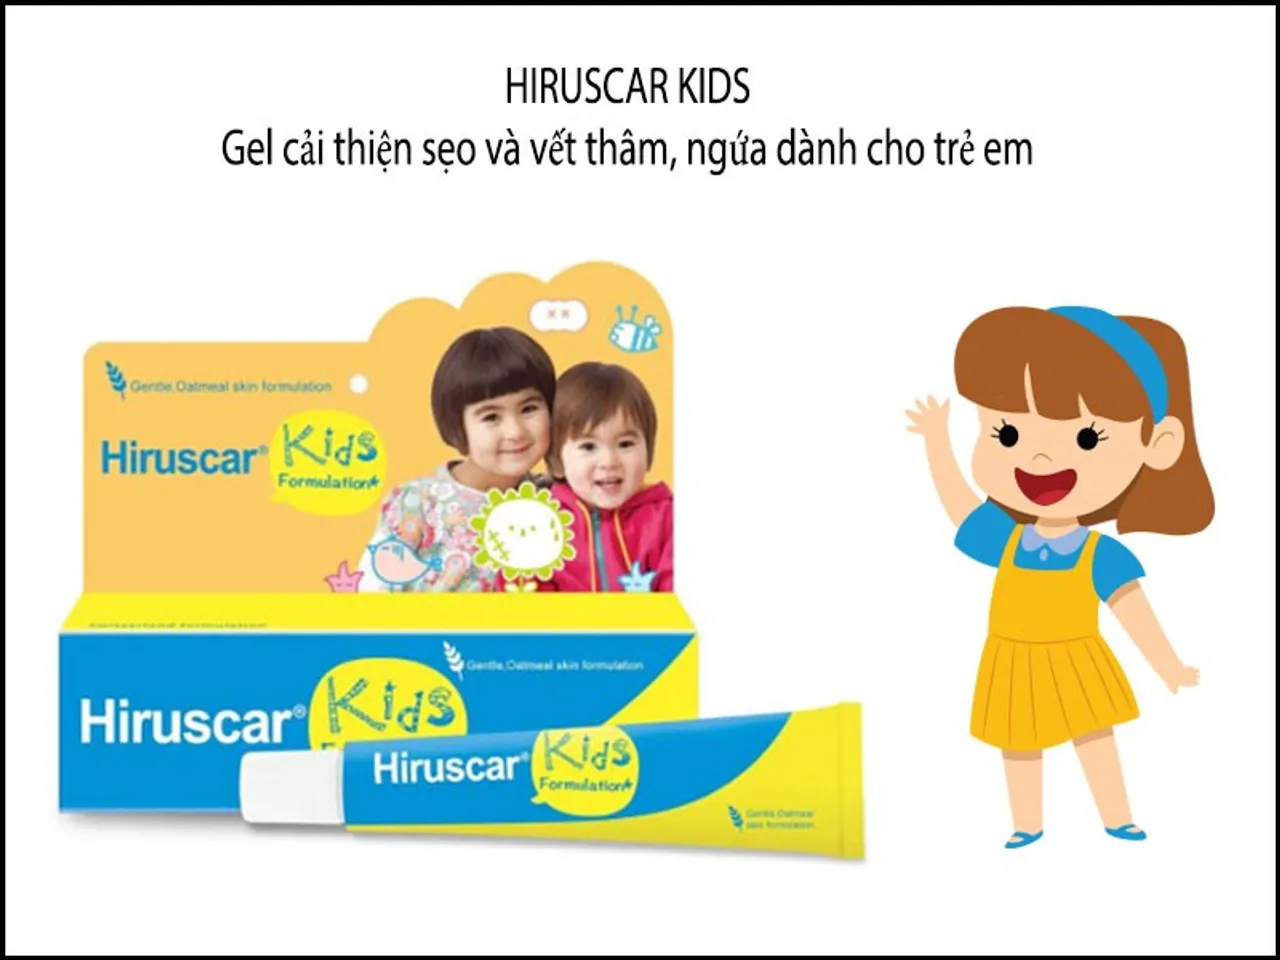 Gel hỗ trợ làm mờ sẹo Hiruscar Kids